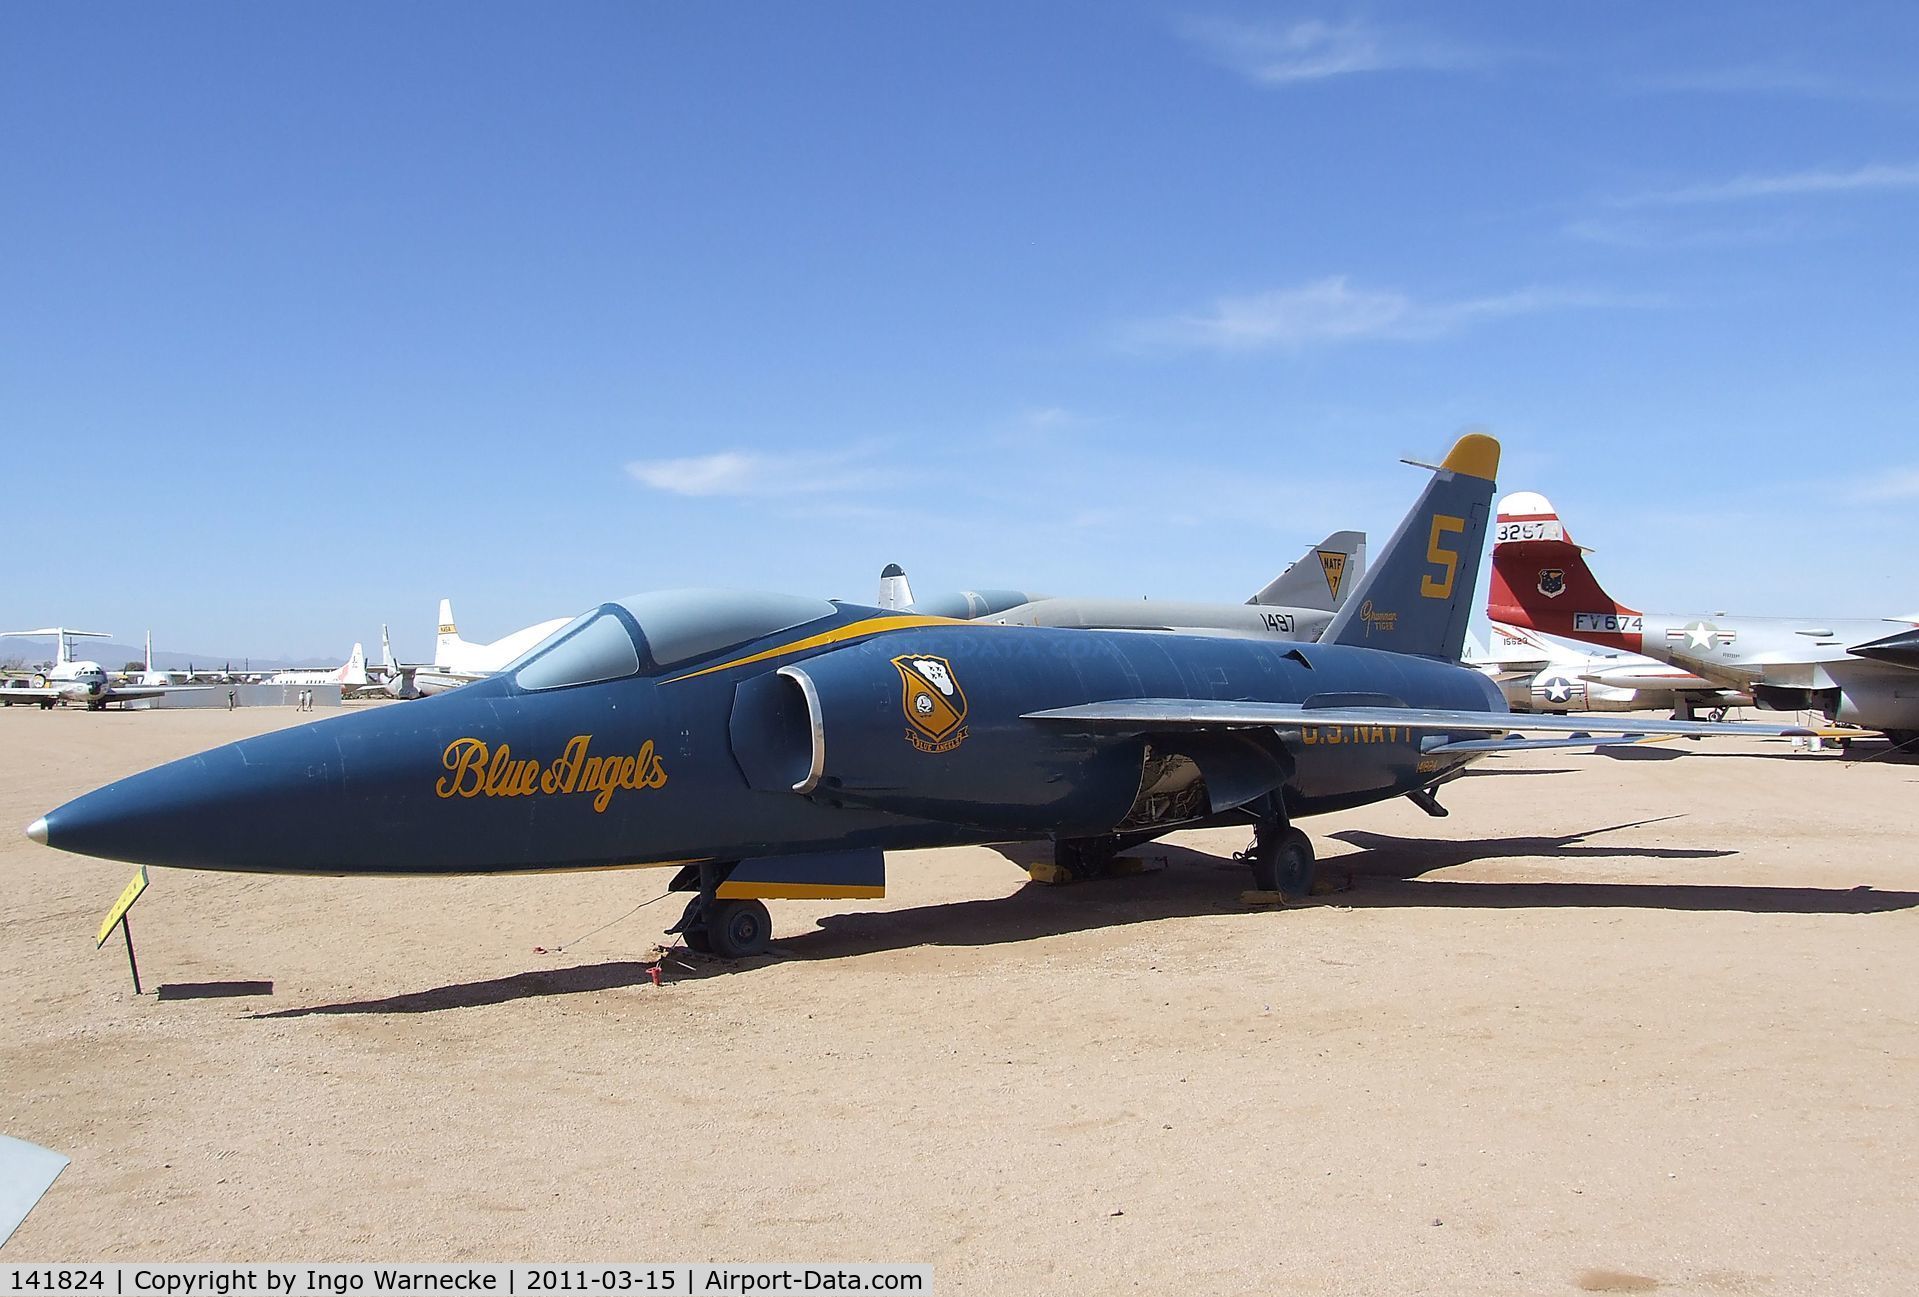 141824, Grumman F11F-1 Tiger C/N 141, Grumman F11F-1 Tiger at the Pima Air & Space Museum, Tucson AZ